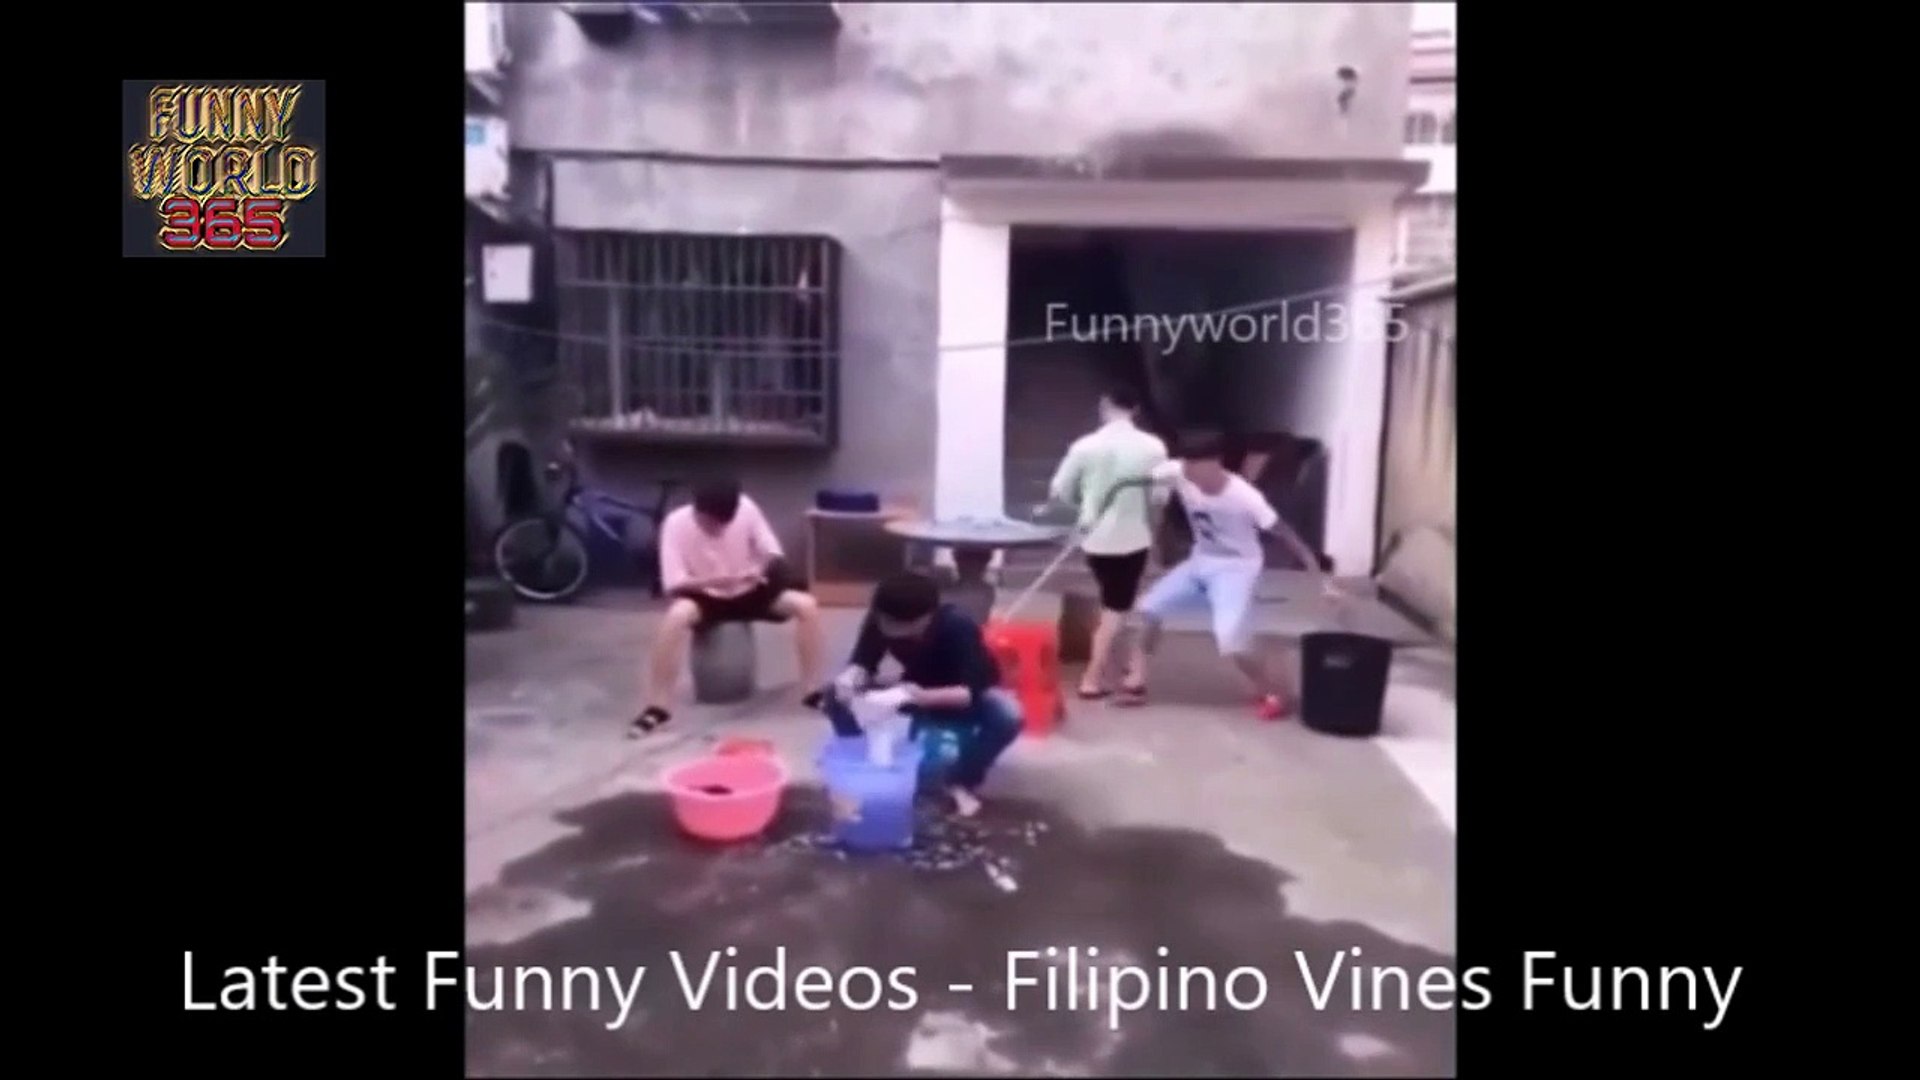 Latest Funny Videos - Filipino Vines Funnyfghj